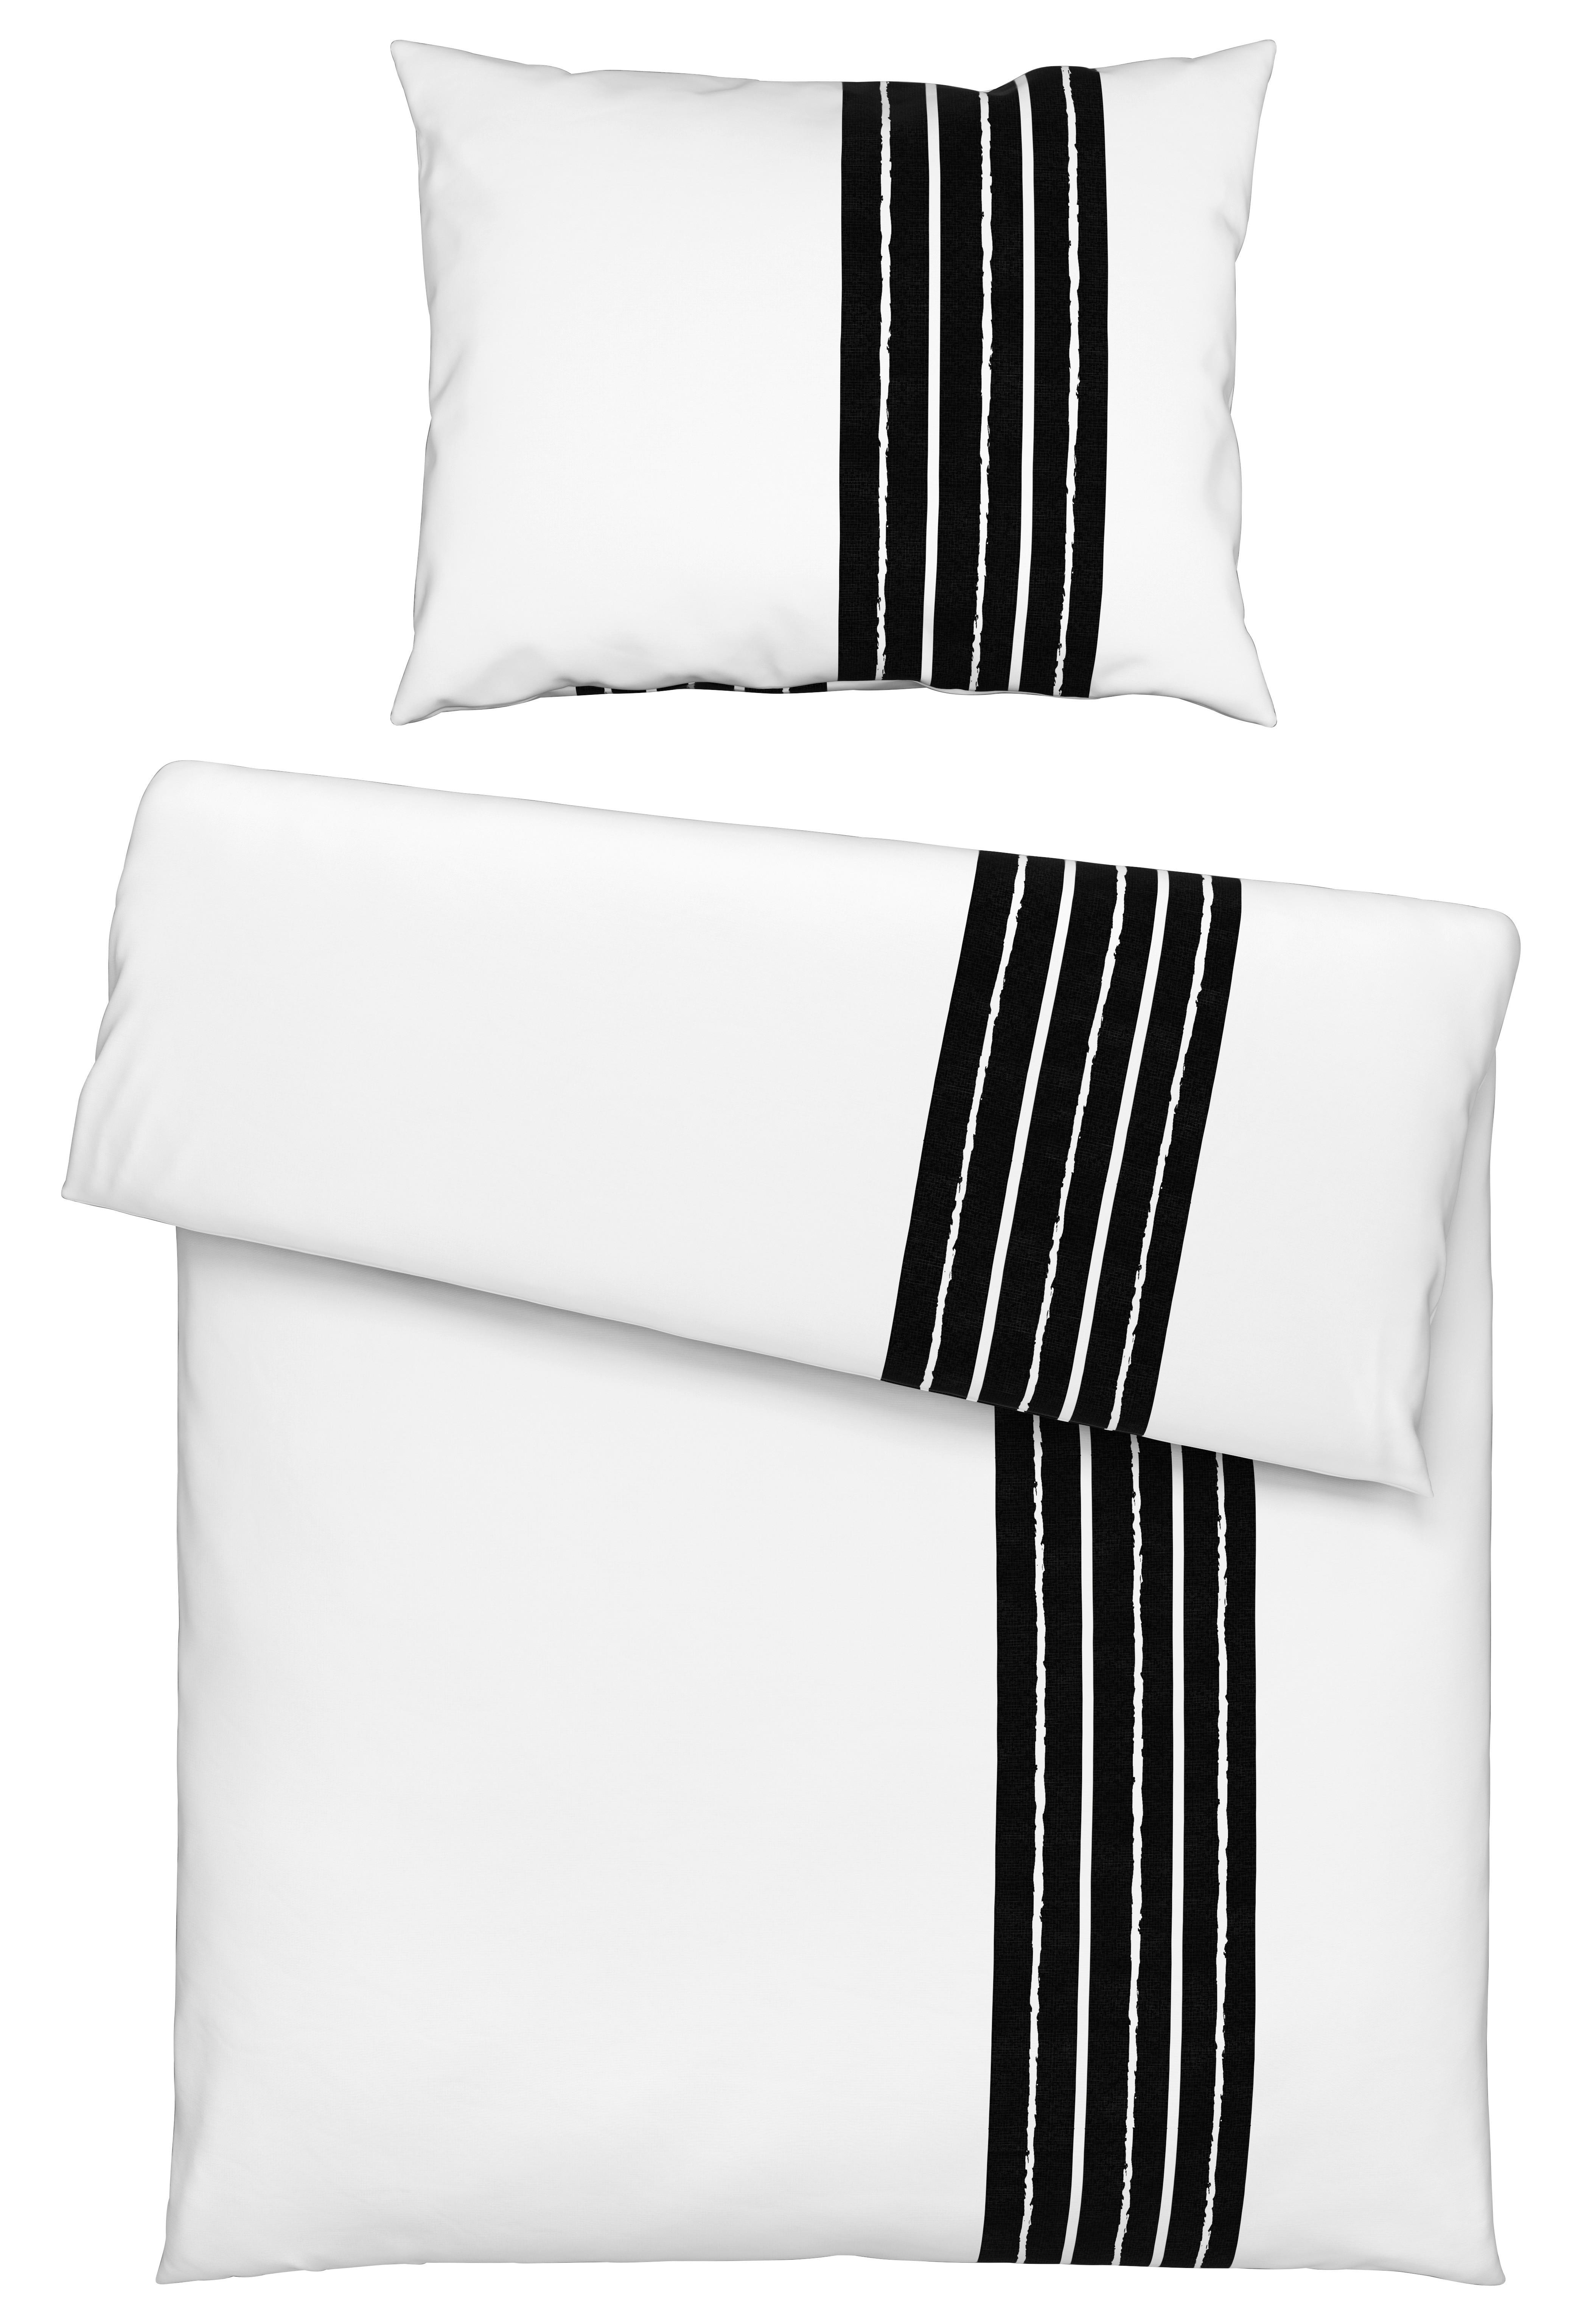 Povlečení Stripes, 140/200cm, Bílá - bílá, Moderní, textil (140/200cm) - Modern Living